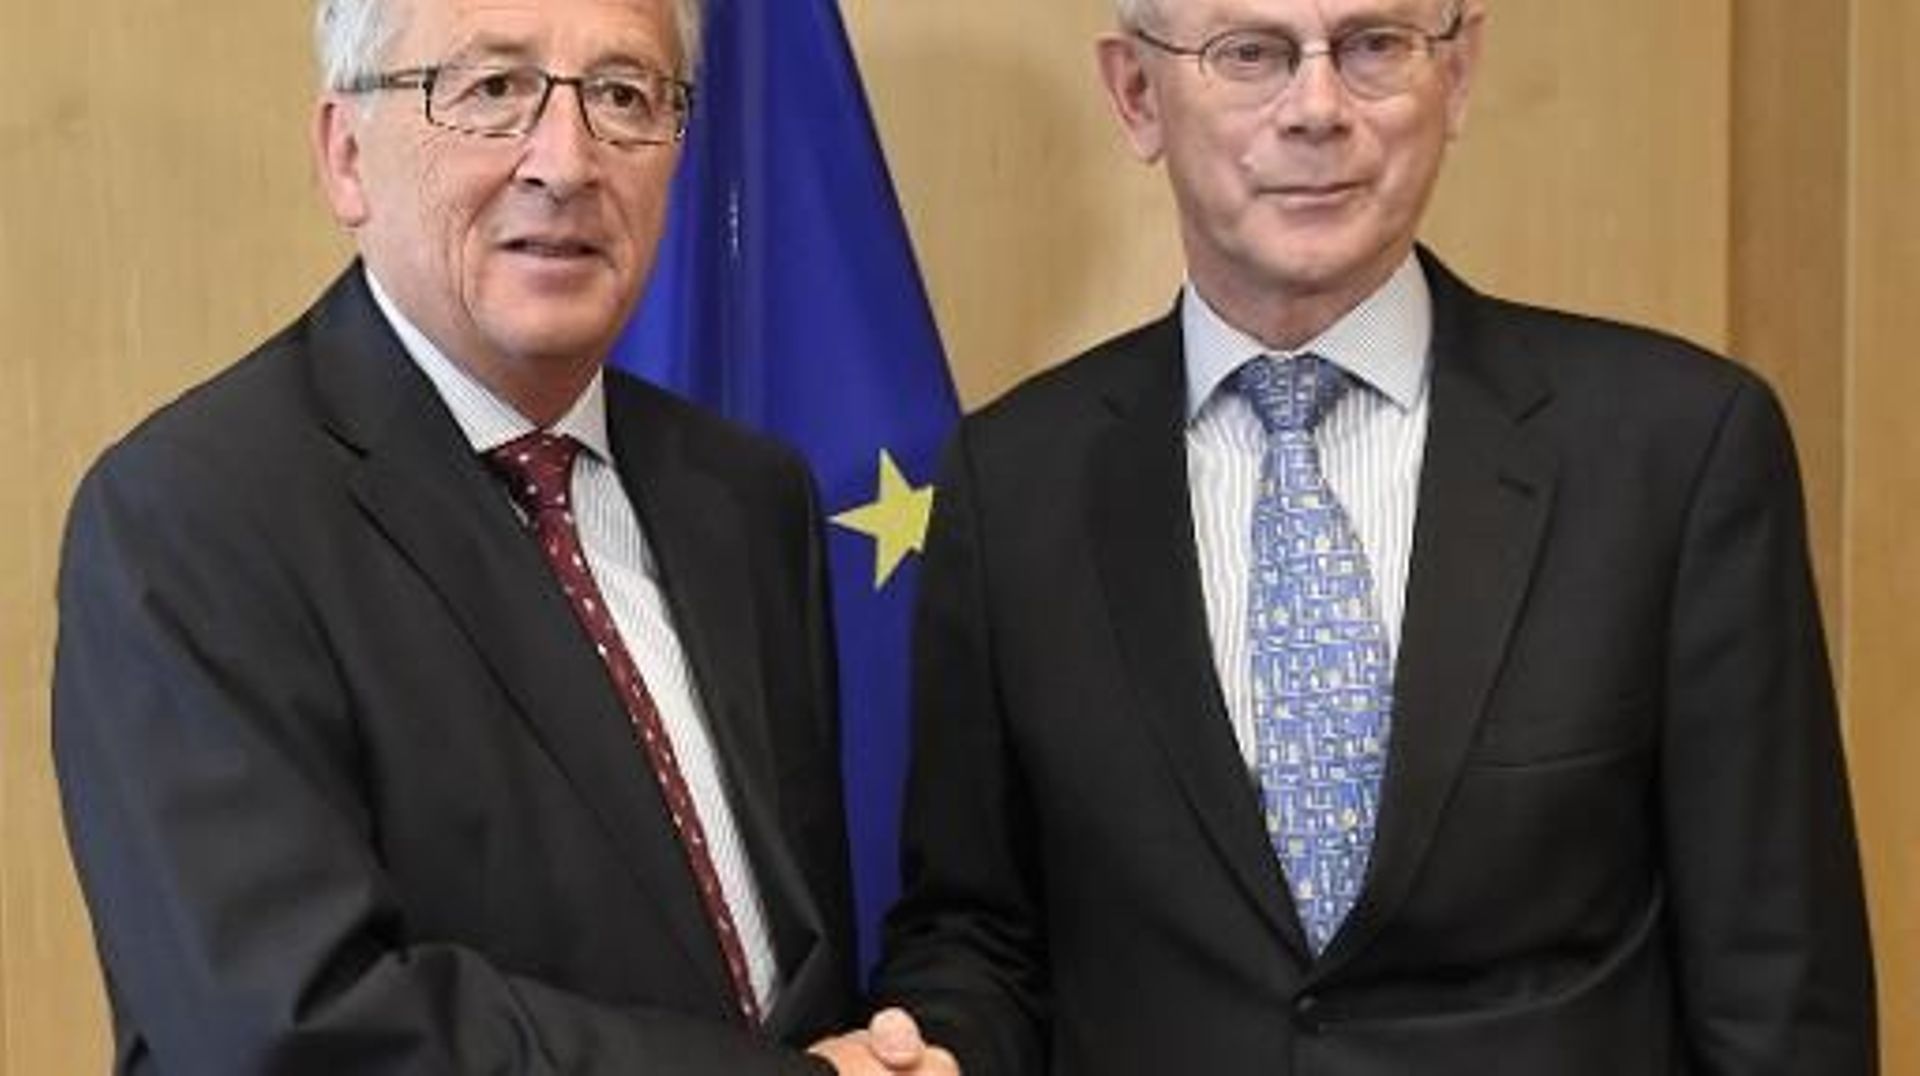 Le président de la commission européenne désigné jean-Claude Juncker (g) et le président du conseil européen Herman van Rompuy, à Bruxelles le 3 juillet 2014